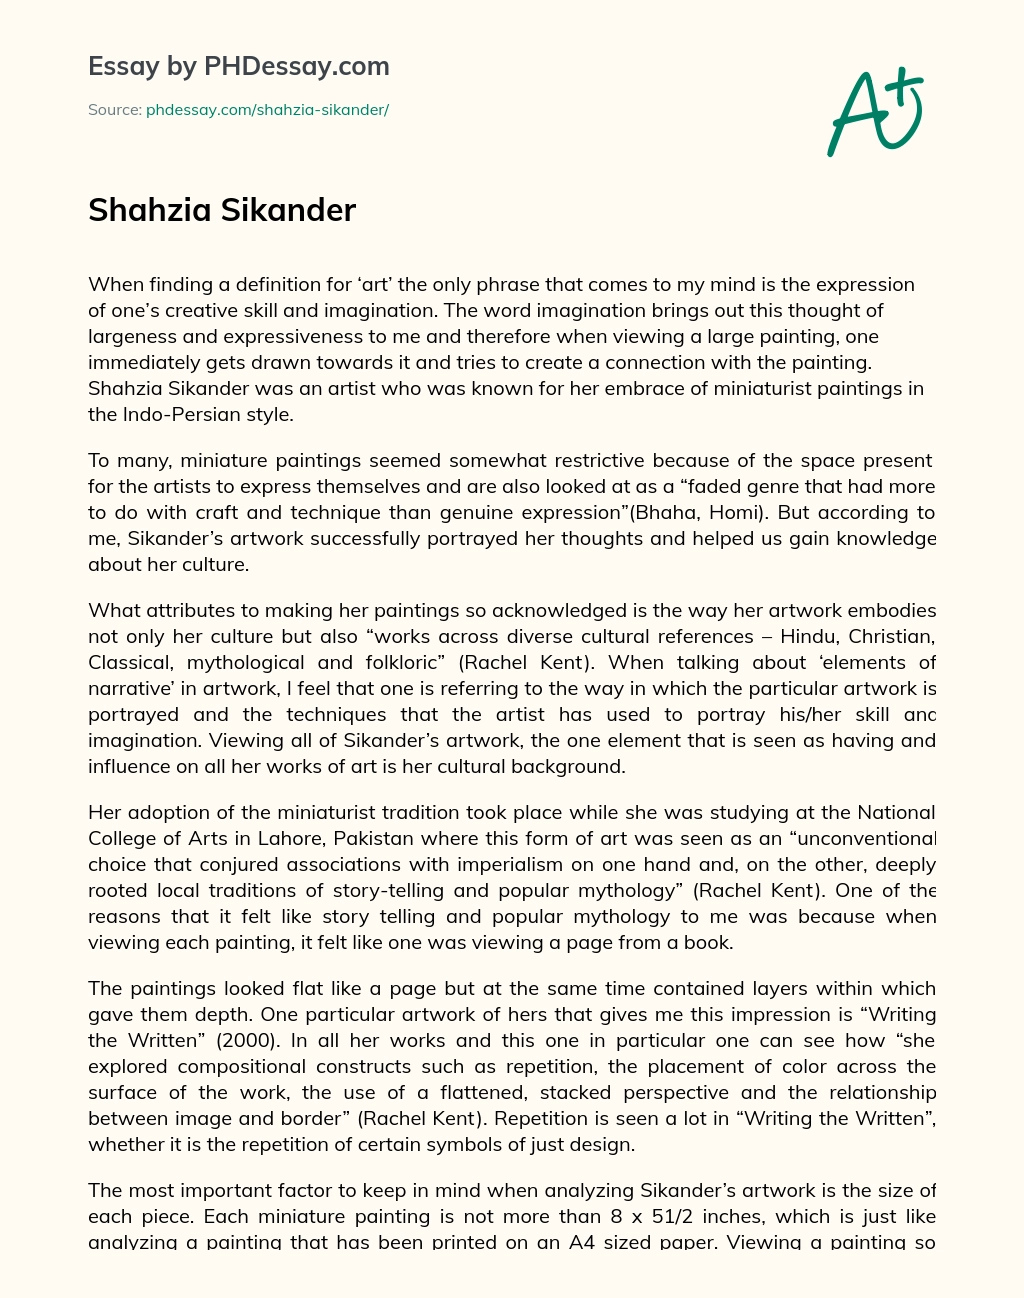 Shahzia Sikander essay